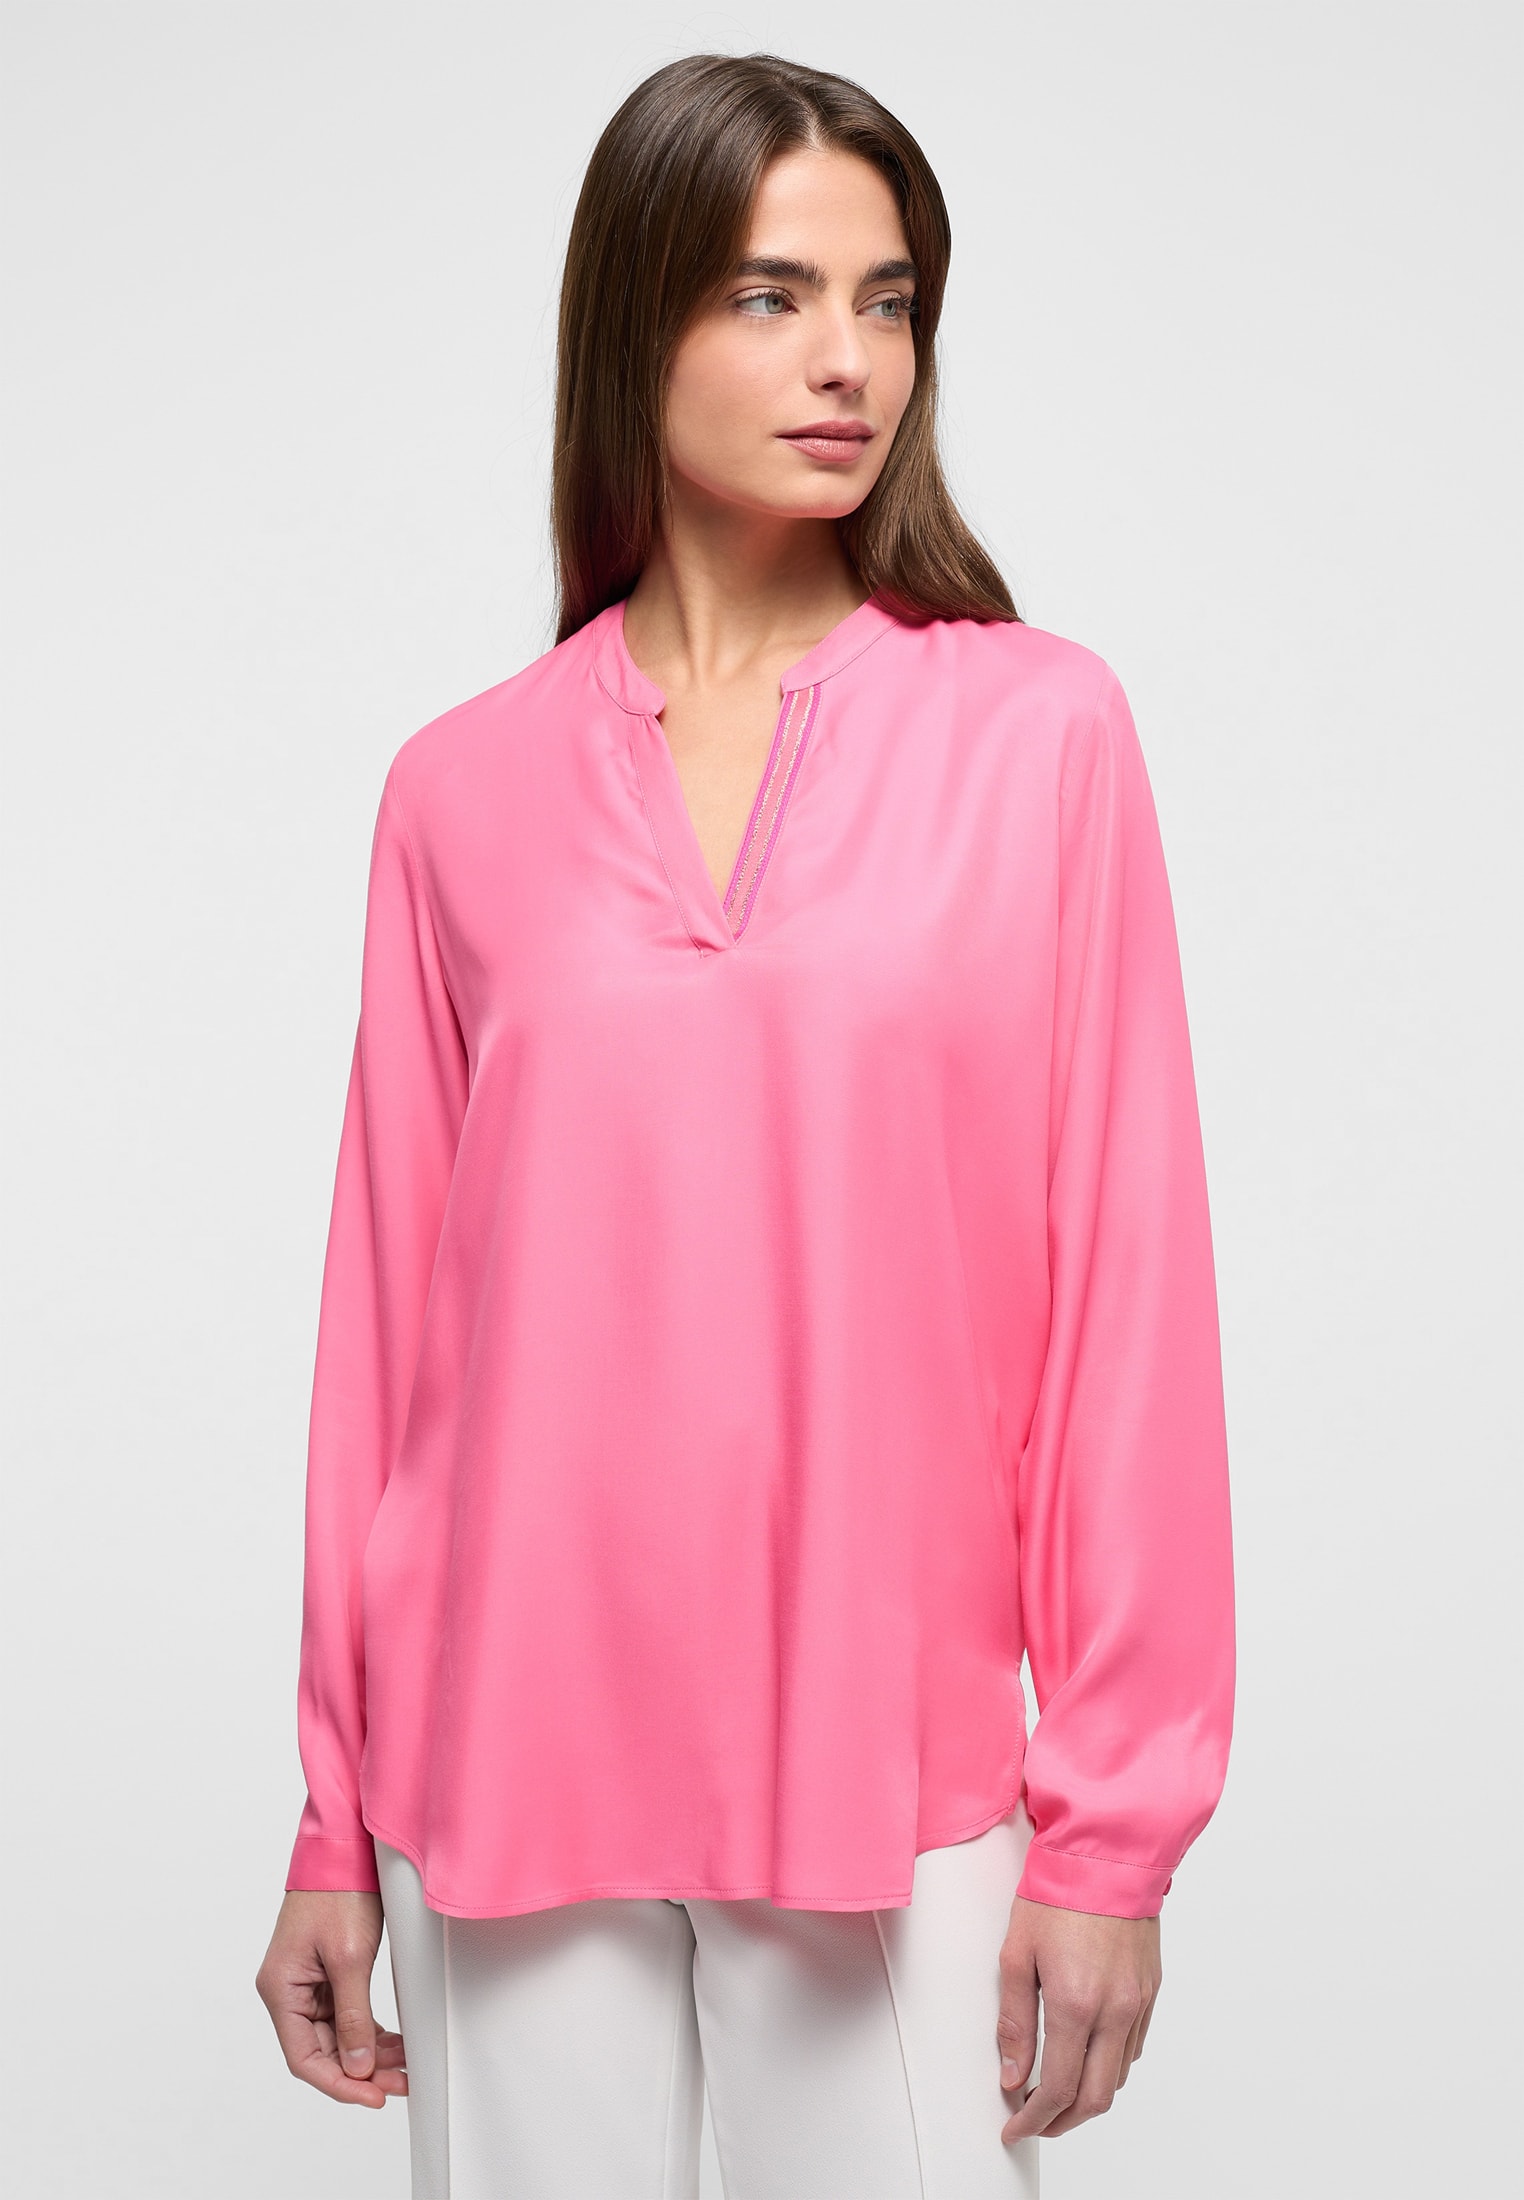 Viscose Shirt Bluse in pink unifarben | pink | 42 | Langarm |  2BL04272-15-21-42-1/1